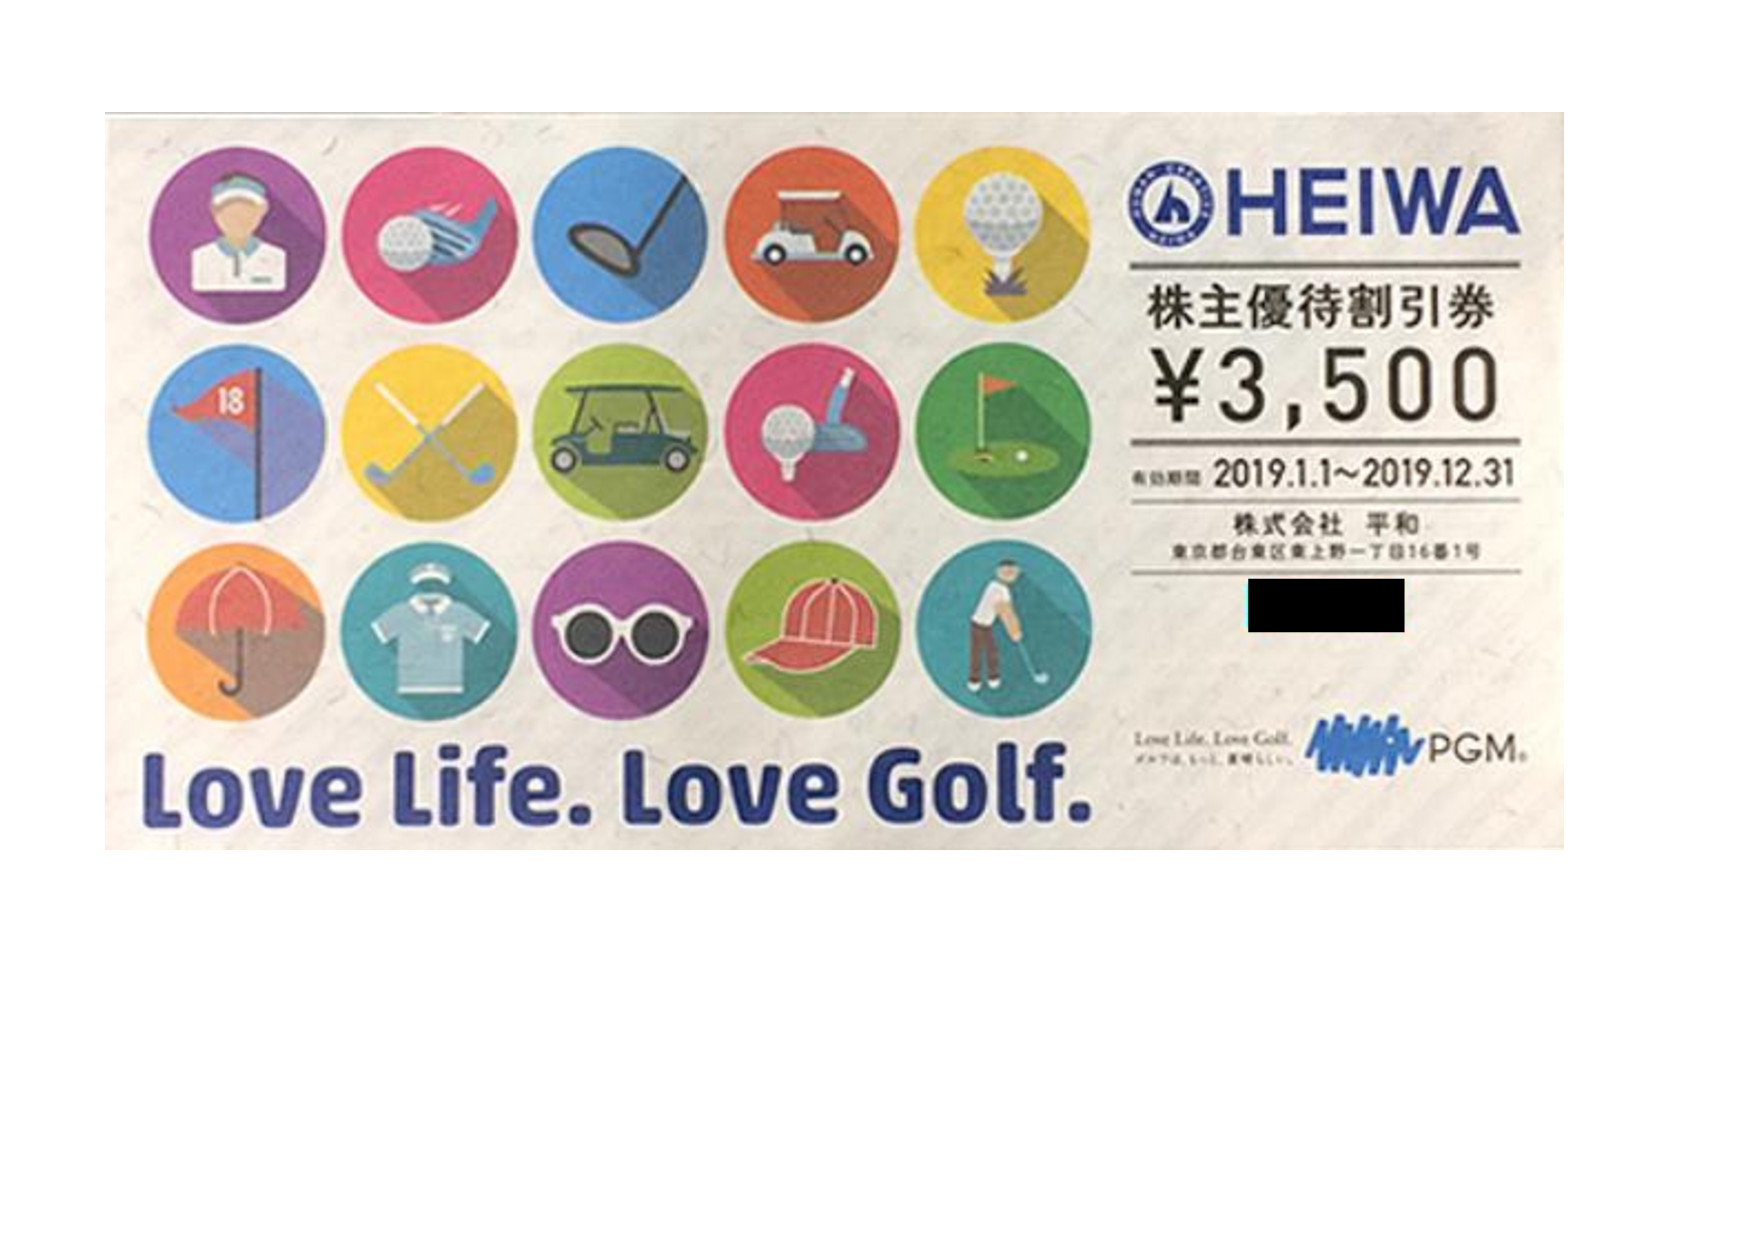 平和グループ(旧PGMゴルフ) HEIWA 株主優待割引券買取致します。